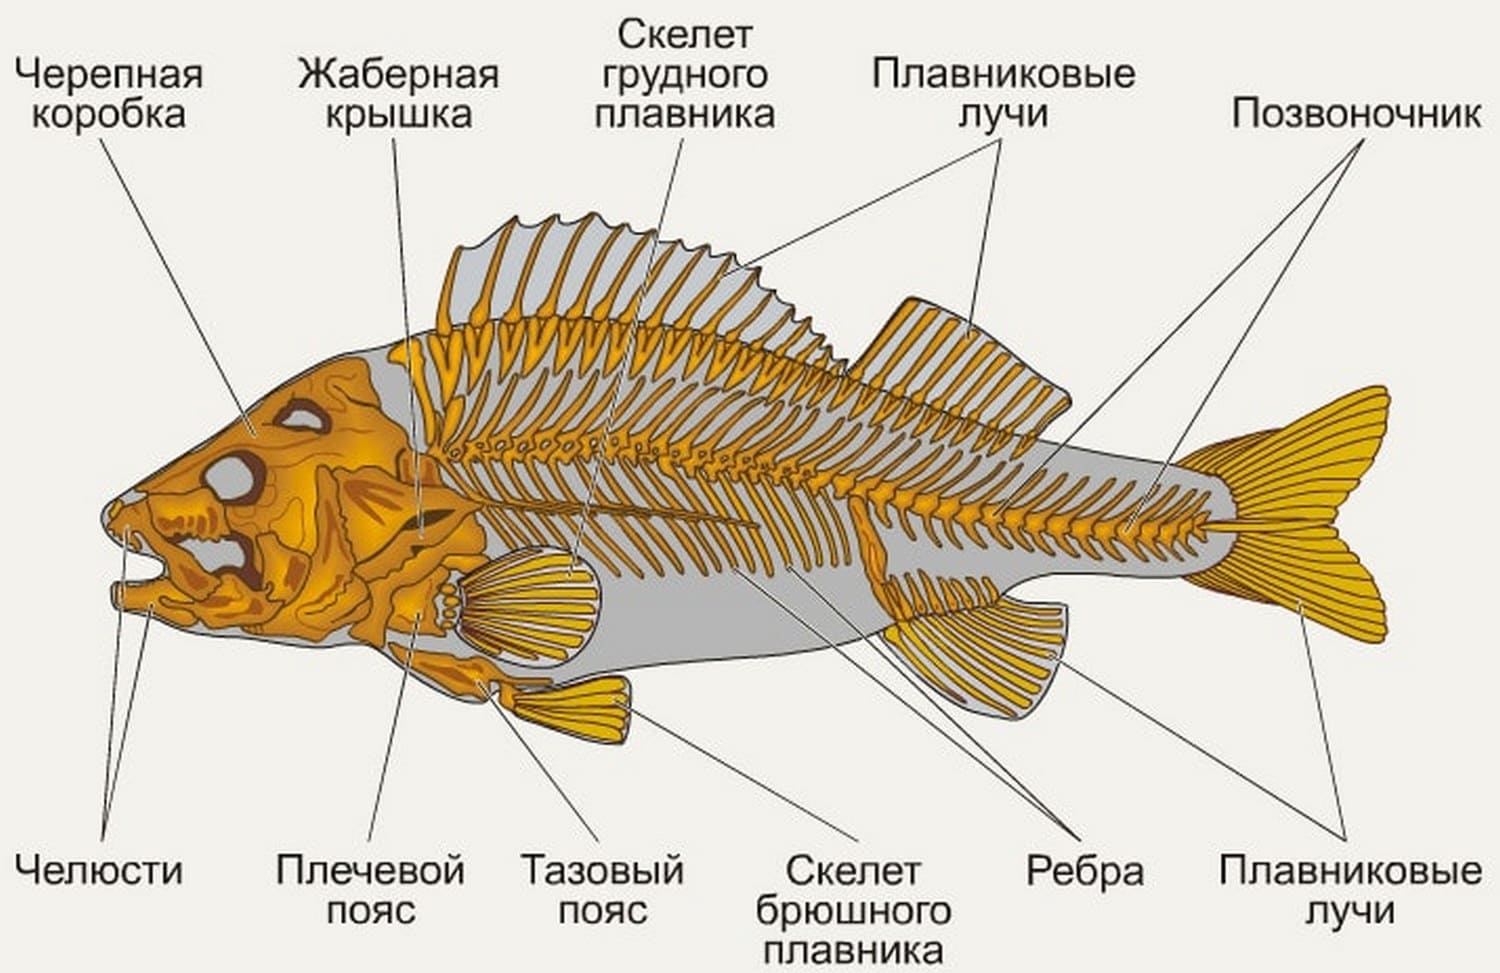 Строение рыбы — внешнее и внутреннее строение, его особенности